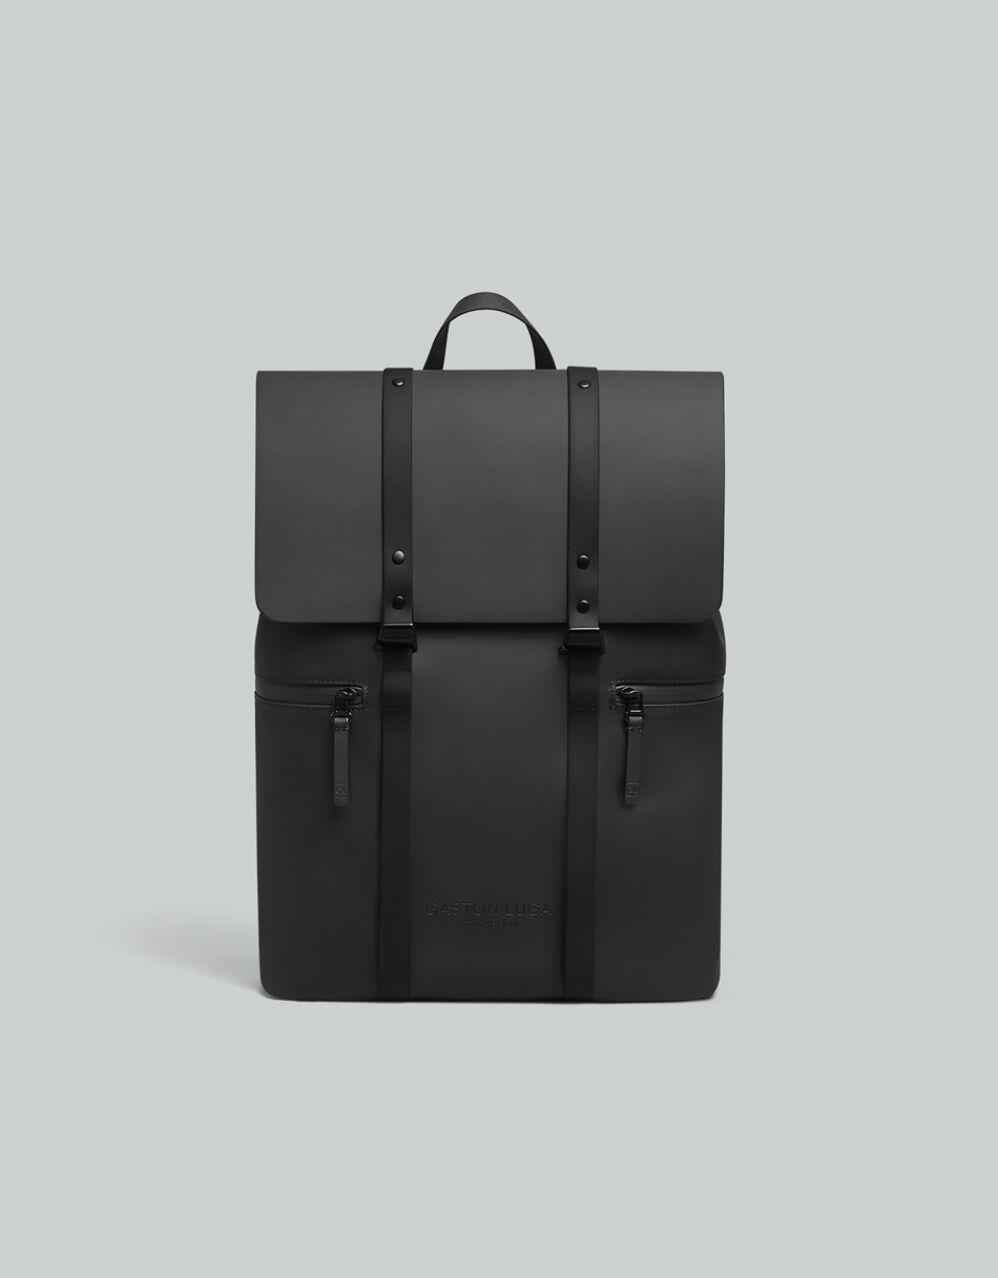 Använda V2 | Another Great F*cking Bag by ANVÄNDA TEAM — Kickstarter